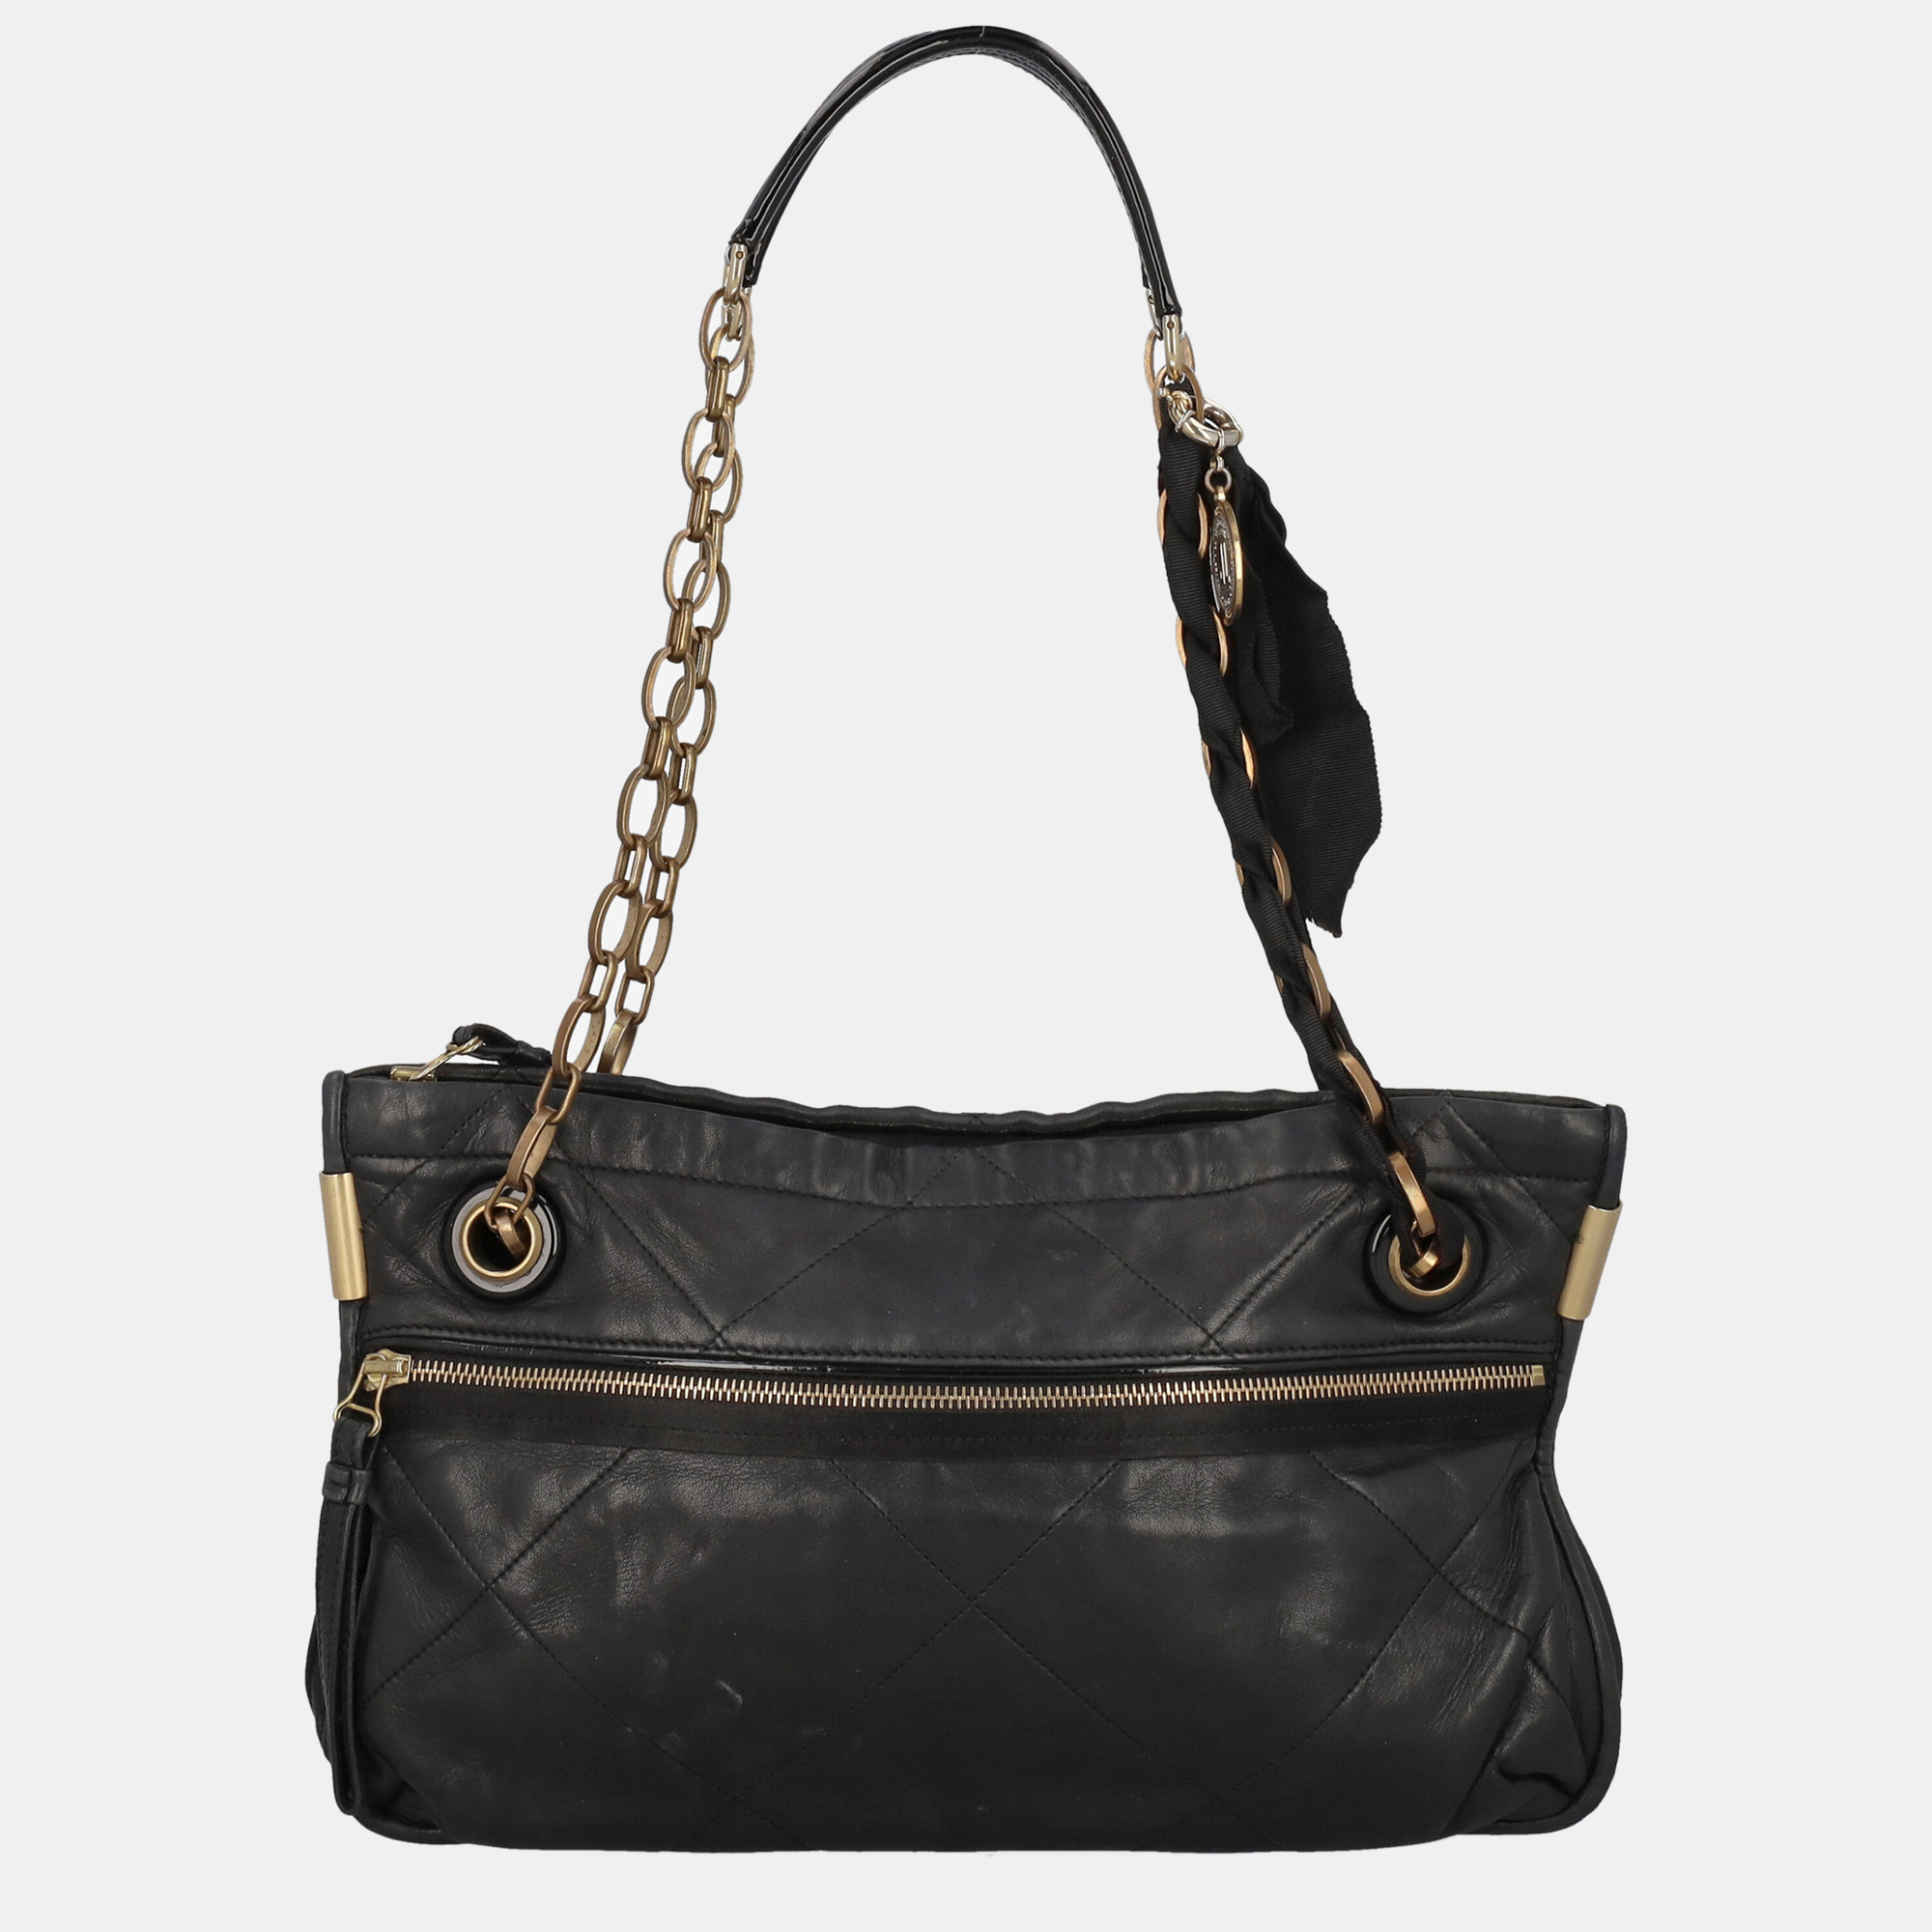 Lanvin  Women's Leather Shoulder Bag - Black - One Size